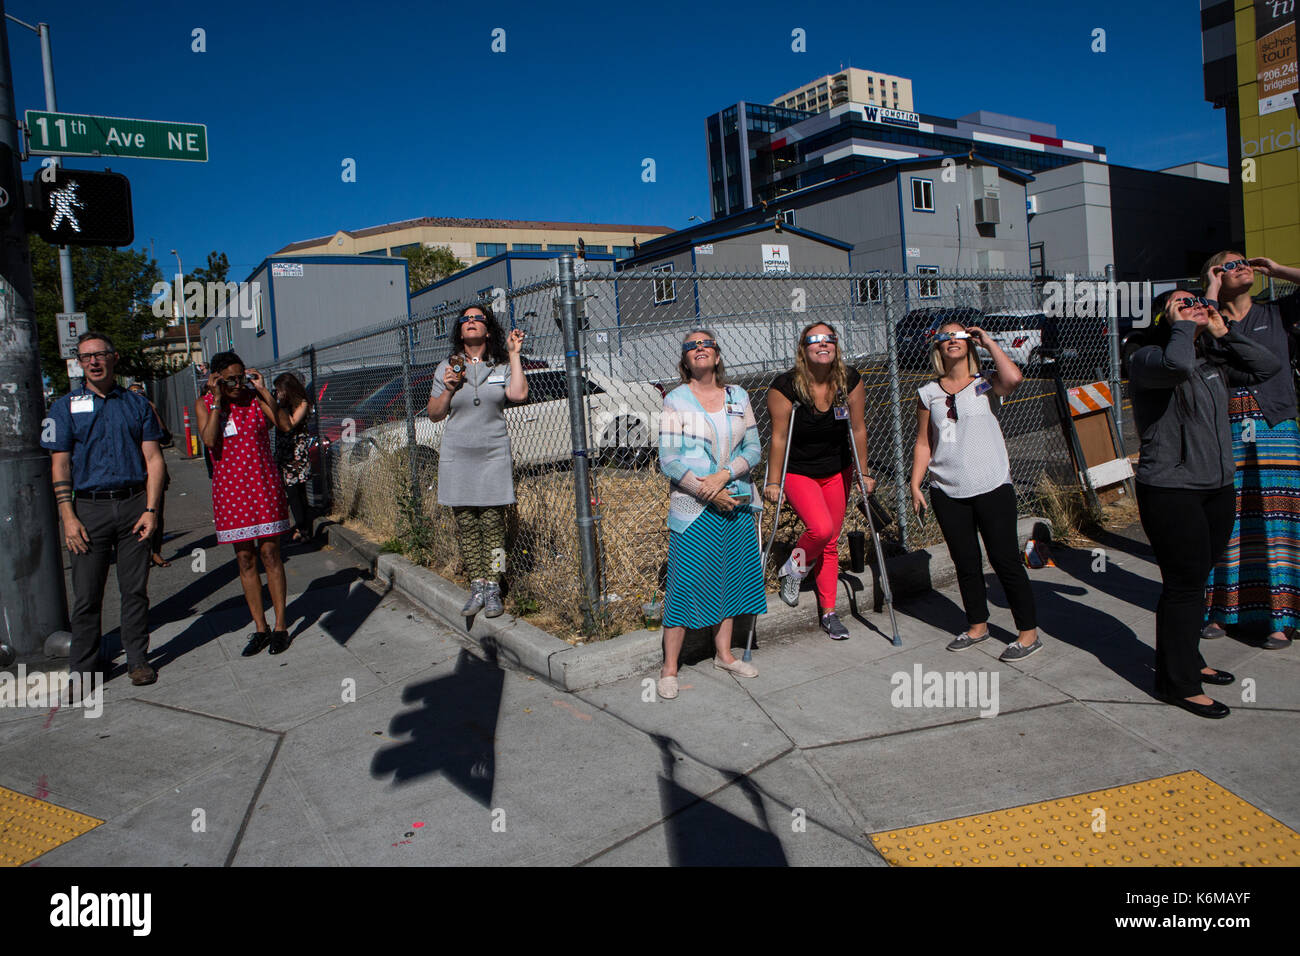 Le persone si radunano per le strade di Seattle, WA, Stati Uniti d'America per guardare le eclissi solare nel mese di agosto del 2017. Foto Stock